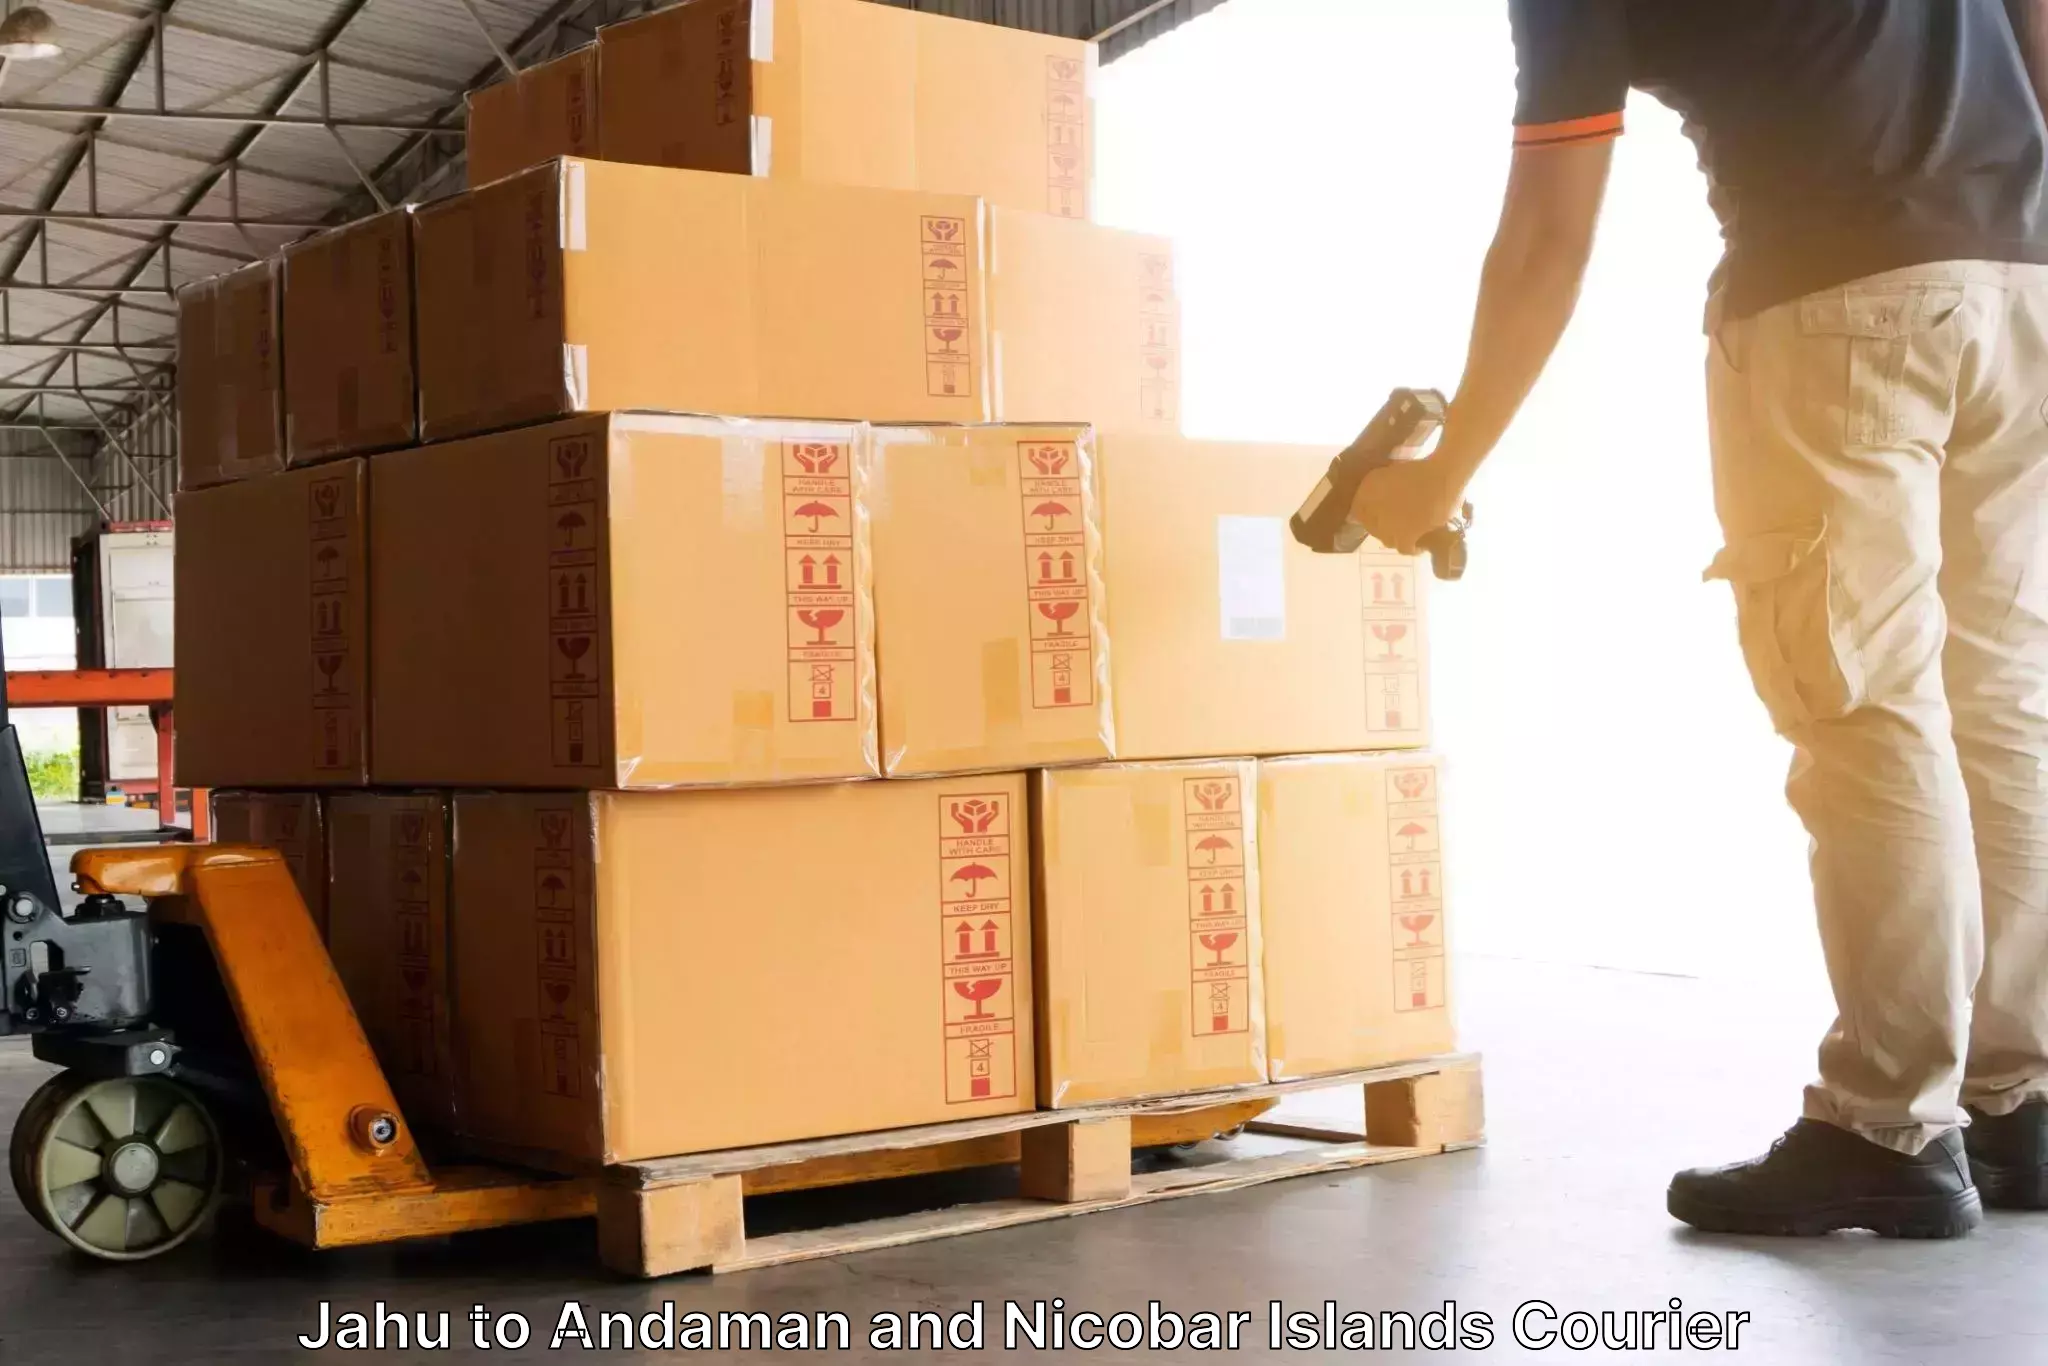 Express logistics service Jahu to Andaman and Nicobar Islands